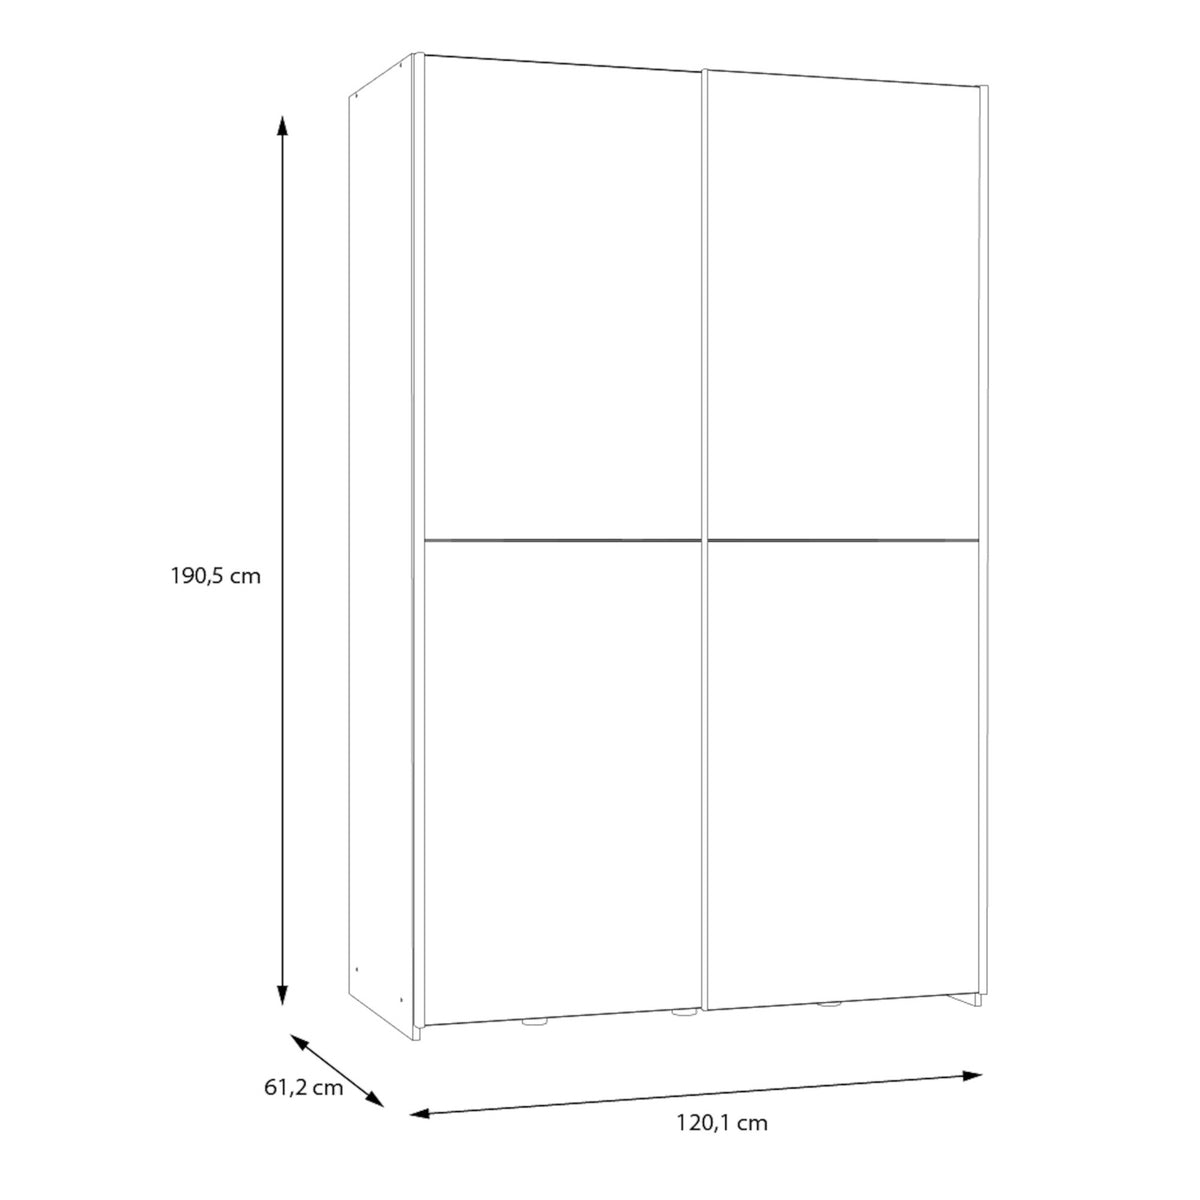 Šatní skříň Amy - 120,1x190,5x61,2 cm (bílá,dub)